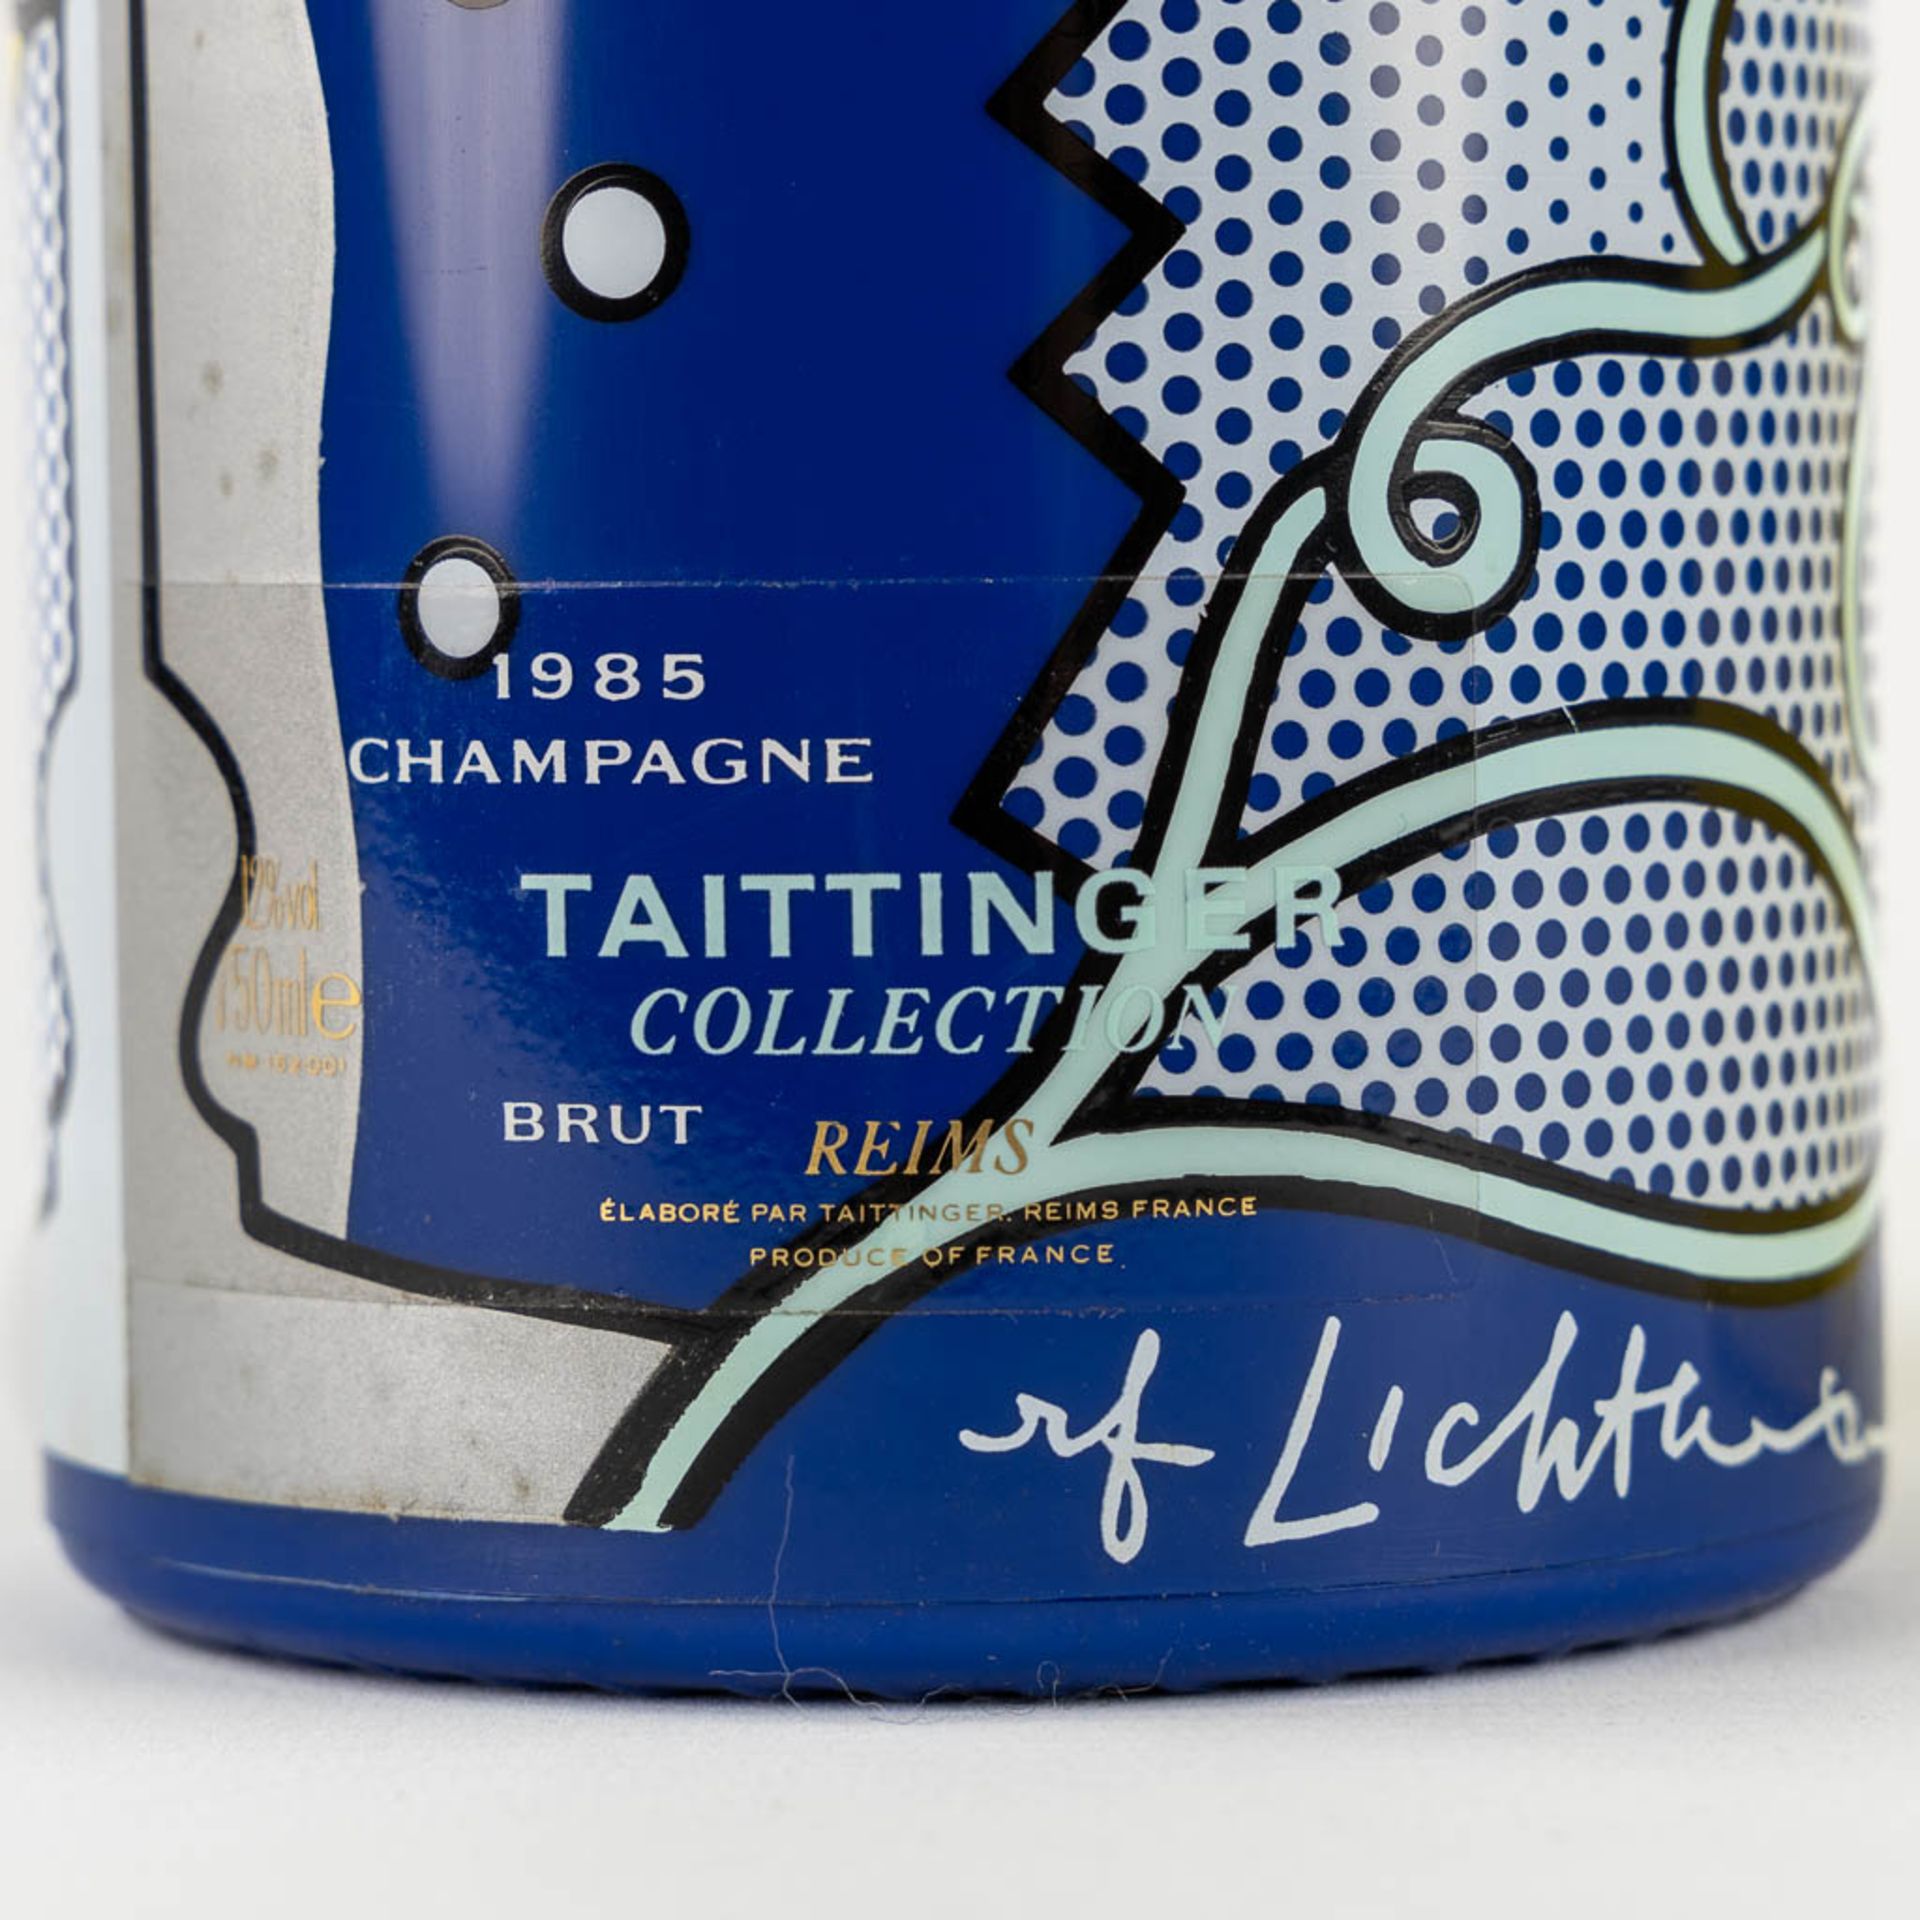 1985 Taittinger Collection Roy Lichtenstein, Champagne - Image 2 of 3